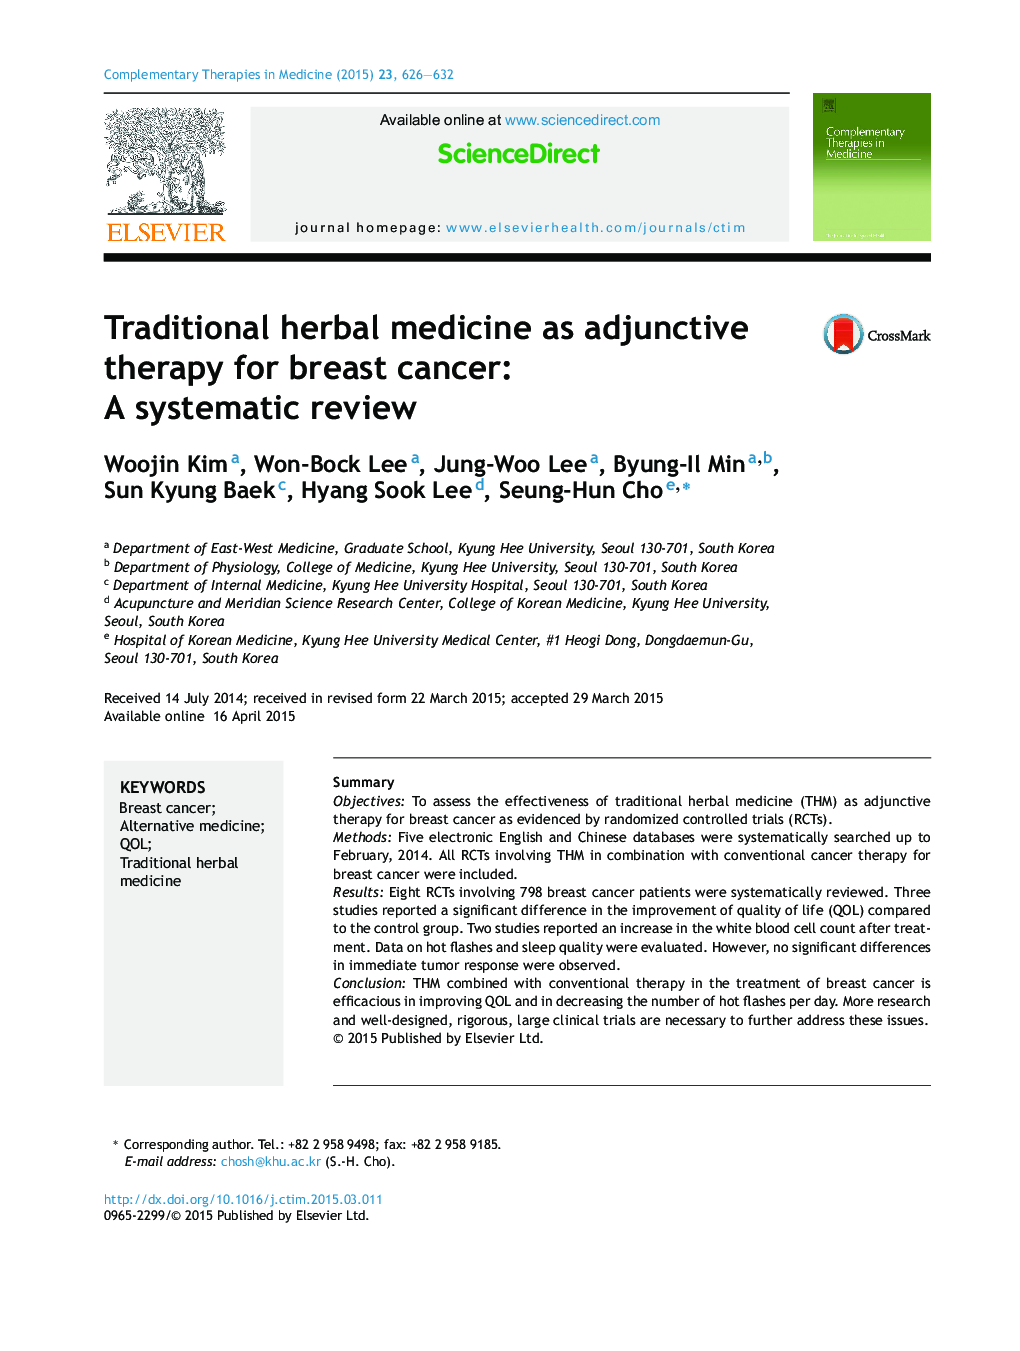 طب گیاهی سنتی به عنوان درمان کمکی برای سرطان پستان: یک بررسی سیستماتیک